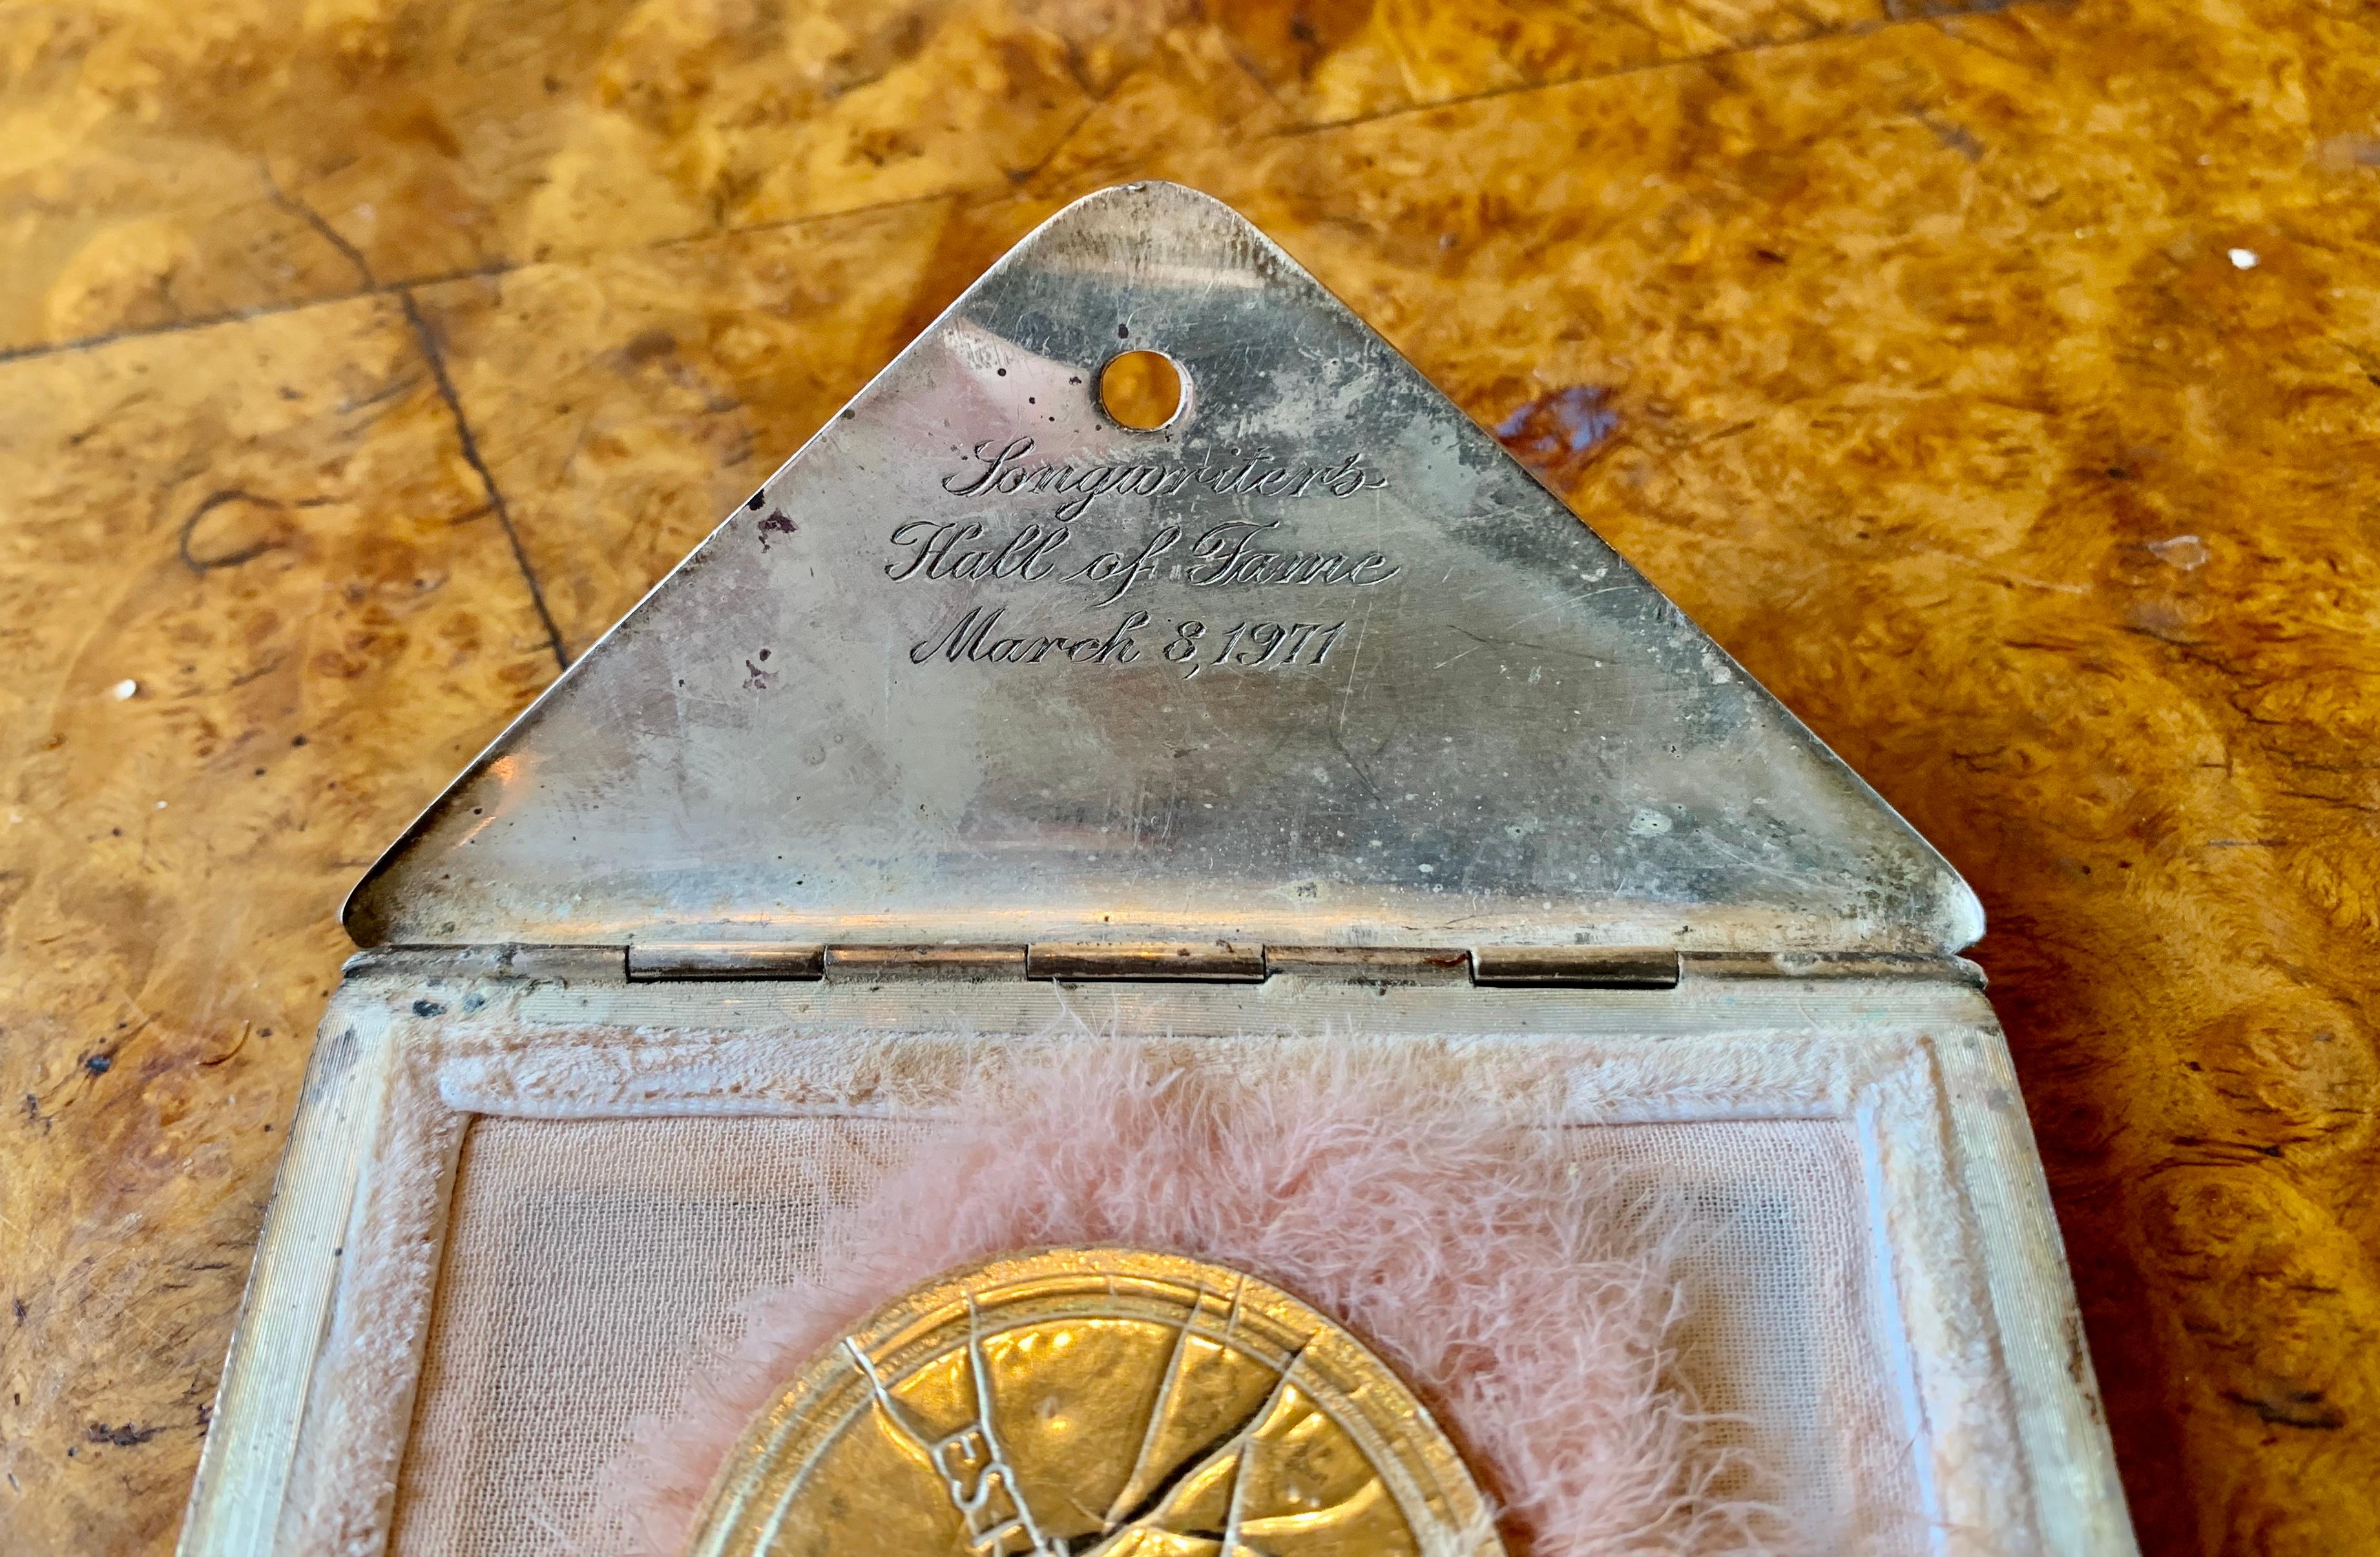 Nous sommes ravis d'offrir la collection Tiffany & Co. Enveloppe compacte en argent appartenant à la légendaire actrice oscarisée CELESTE HOLM, qui lui a été offerte et inscrite par le Songwriter's Hall of Fame.
L'enveloppe stylisée est en argent